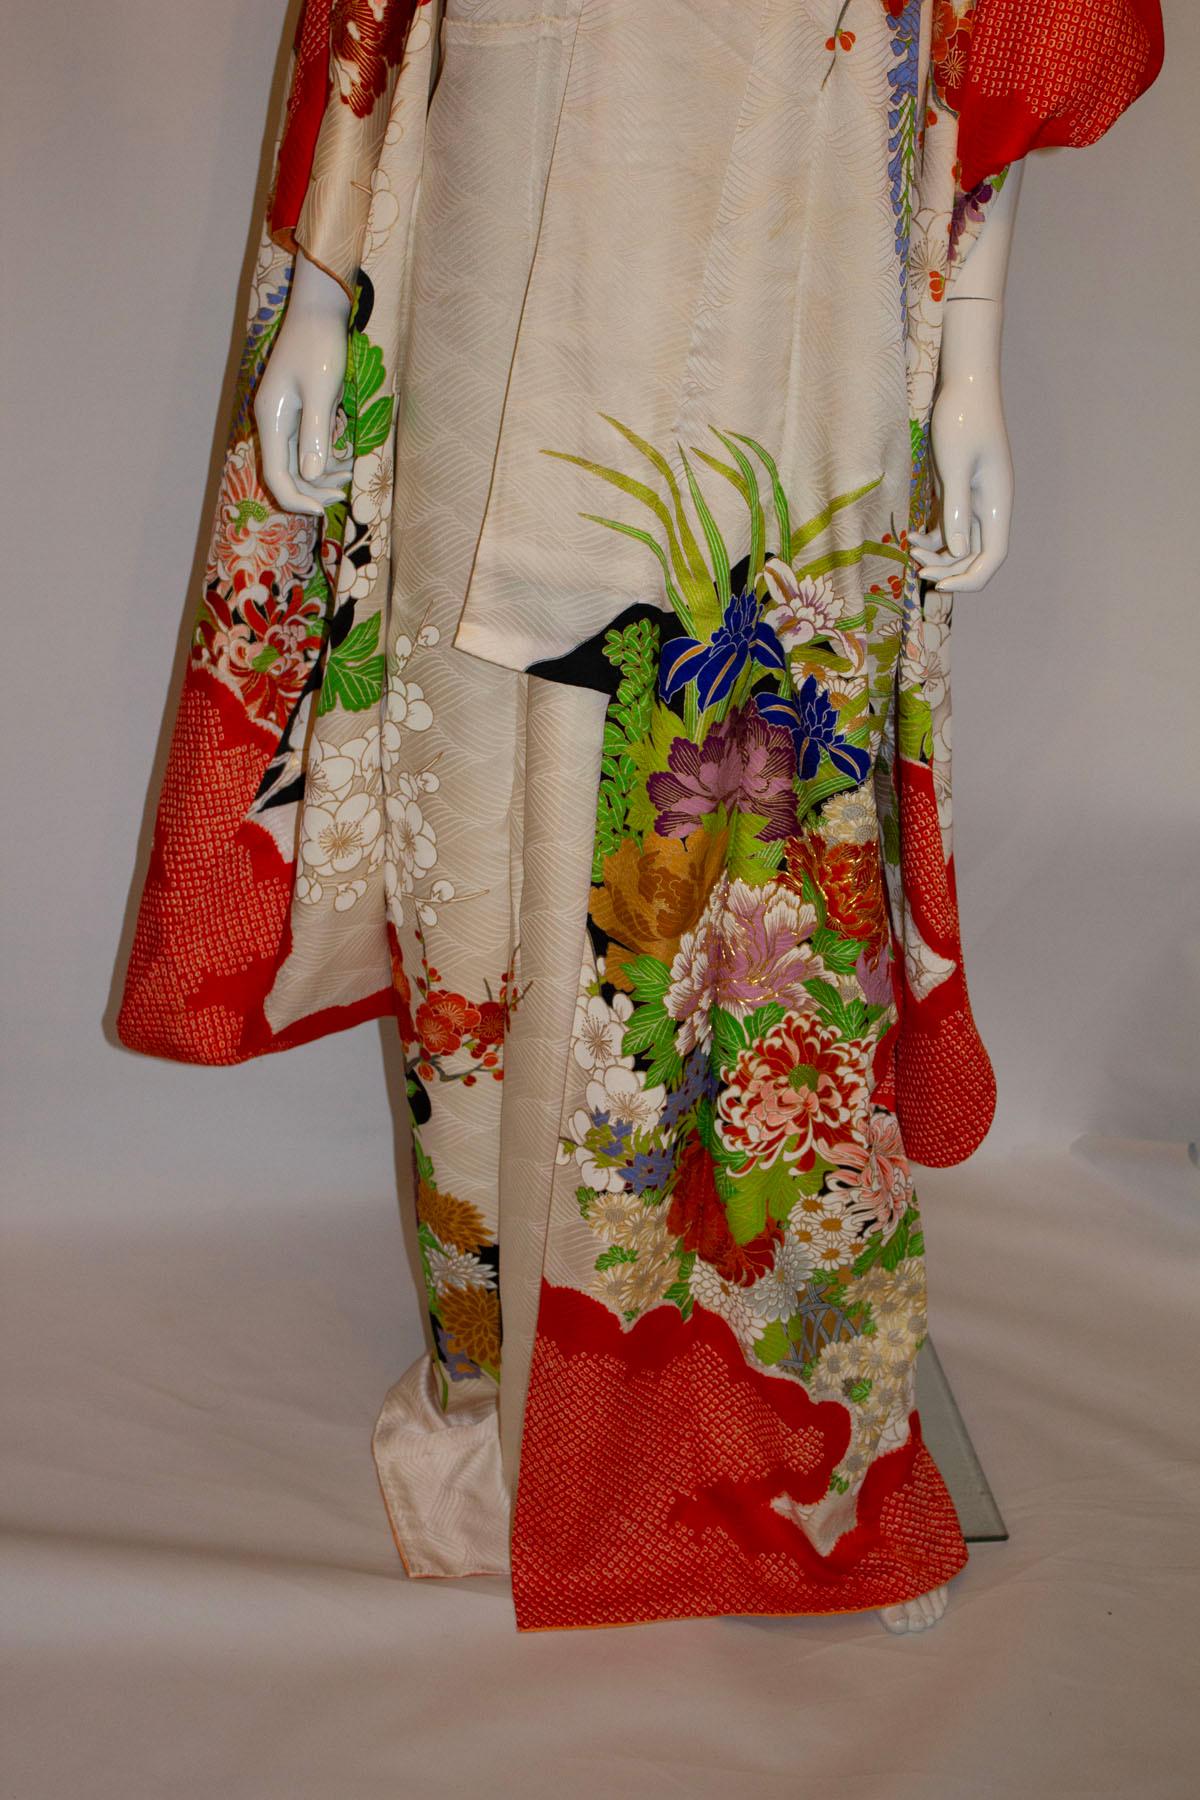 Ein aufsehenerregender Vintage-Kimono mit einem mehrfarbigen Blumenkorbmuster. Der Kimono ist am Saum orangefarben und hat goldene Details um die Blütenblätter. Abmessungen:
Büste bis zu 48'', Länge 62''